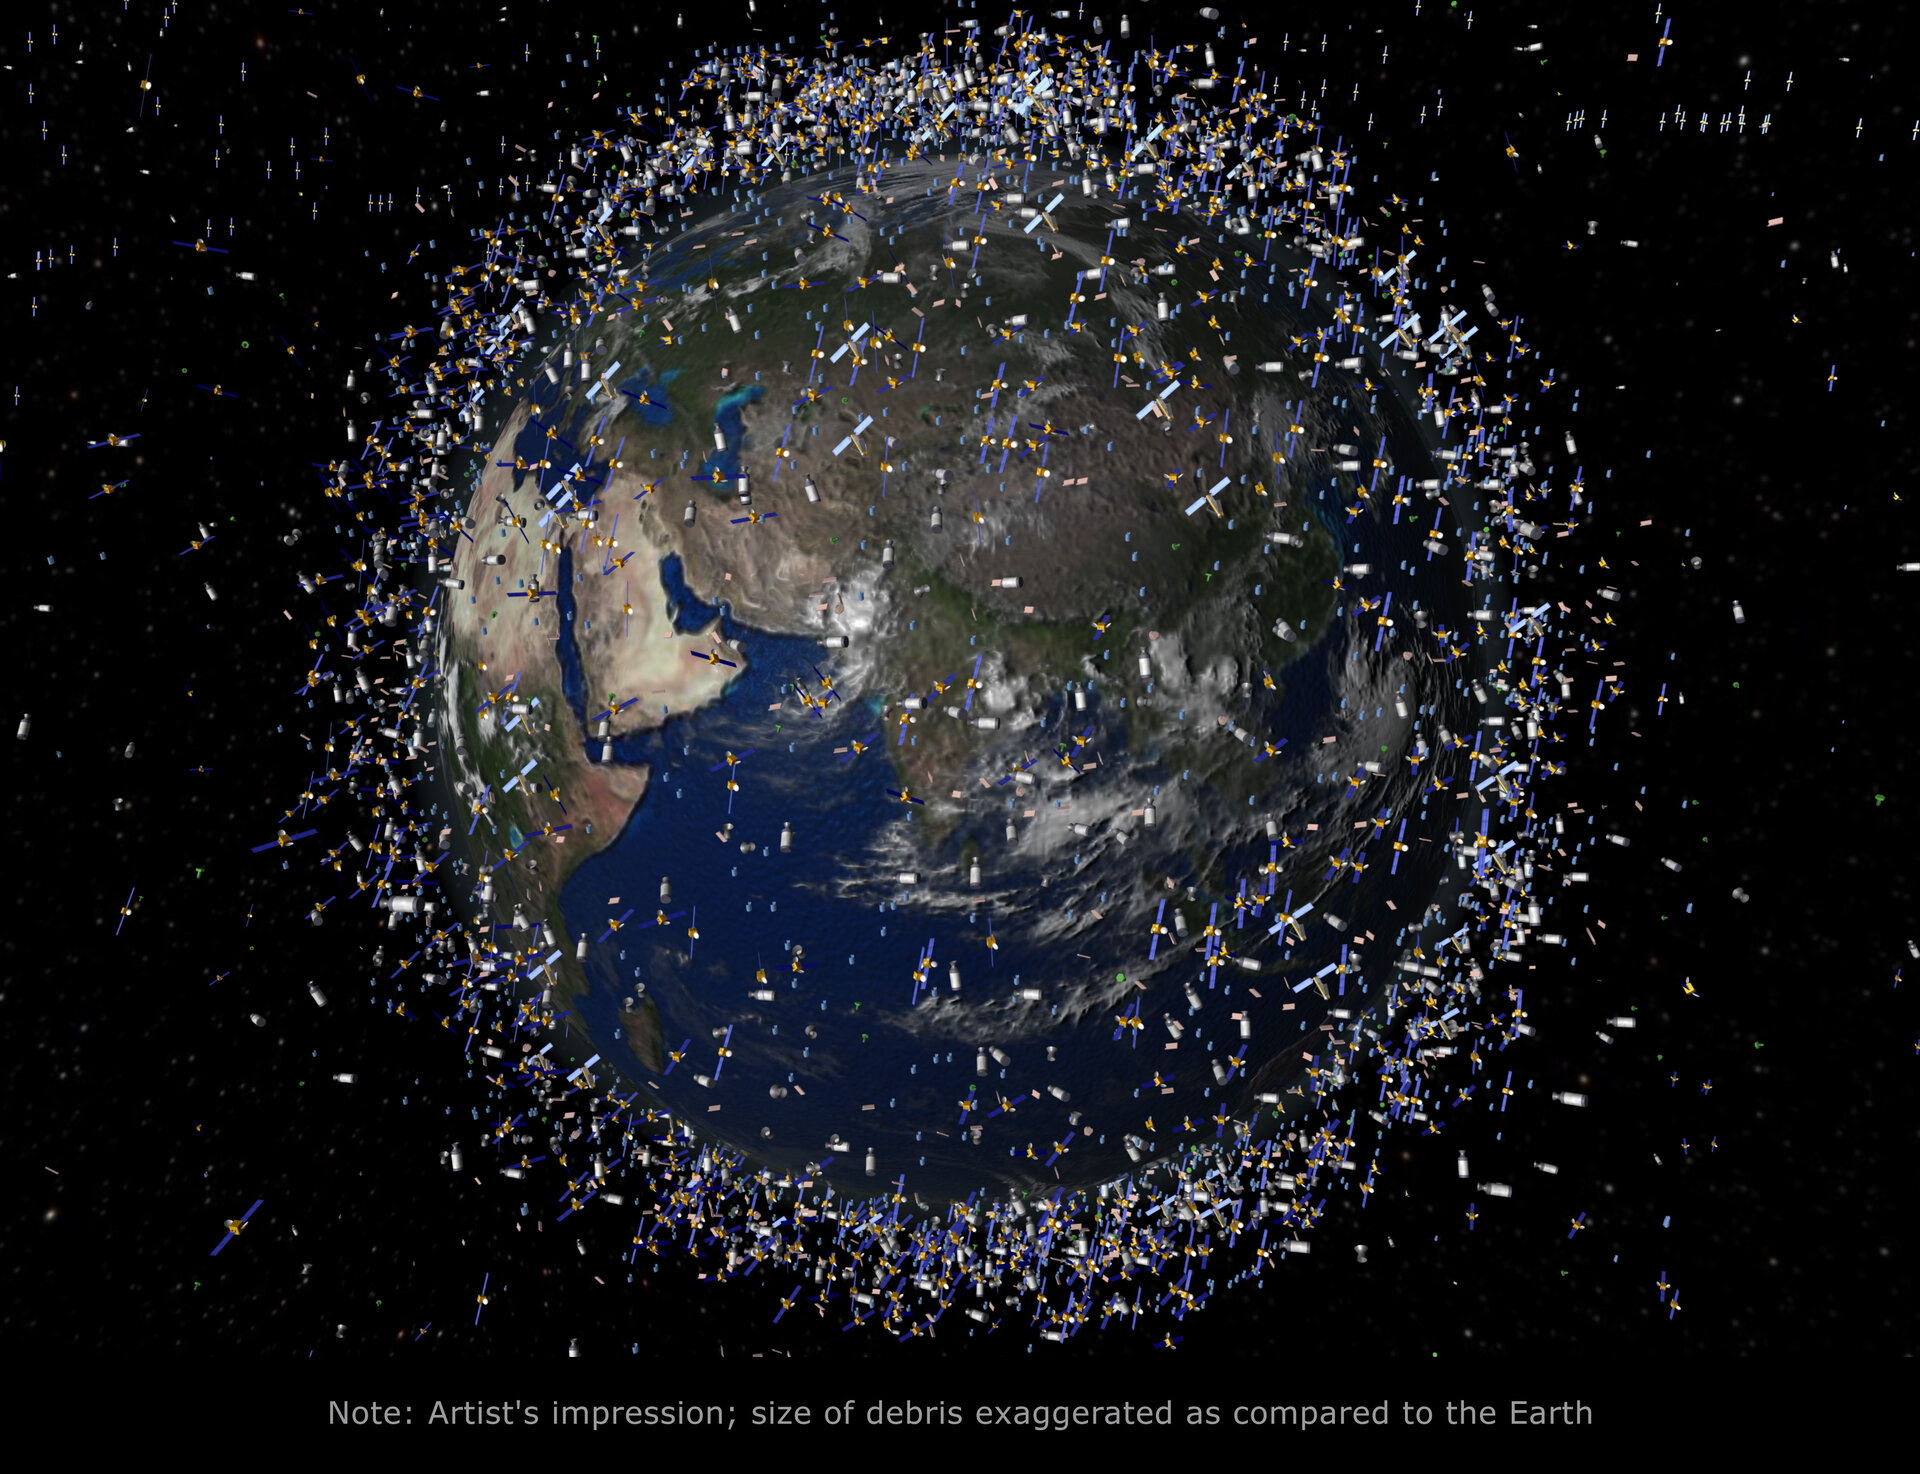 Debris in low-Earth orbit